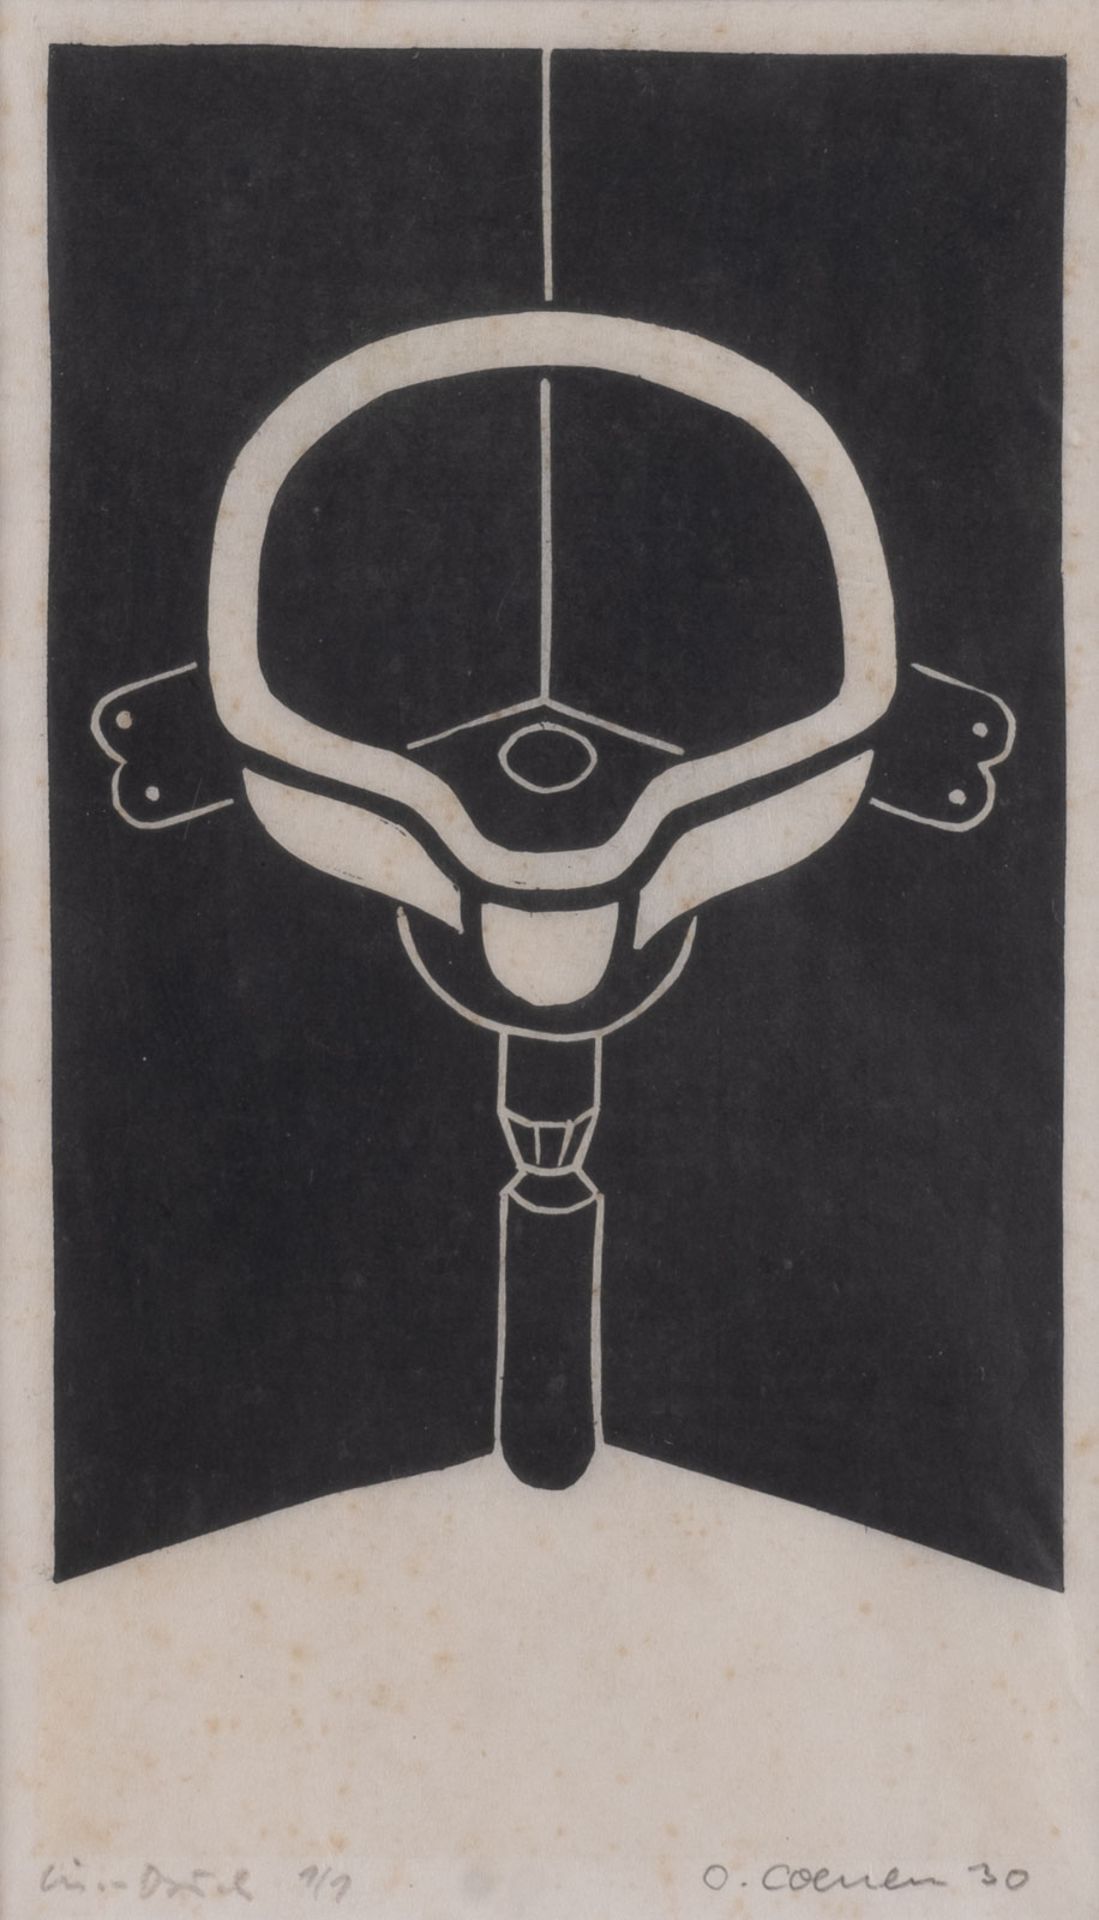 OTTO COENEN, KONVOLUT VON DREI LINOLSCHNITTEN (1930) - Bild 2 aus 3